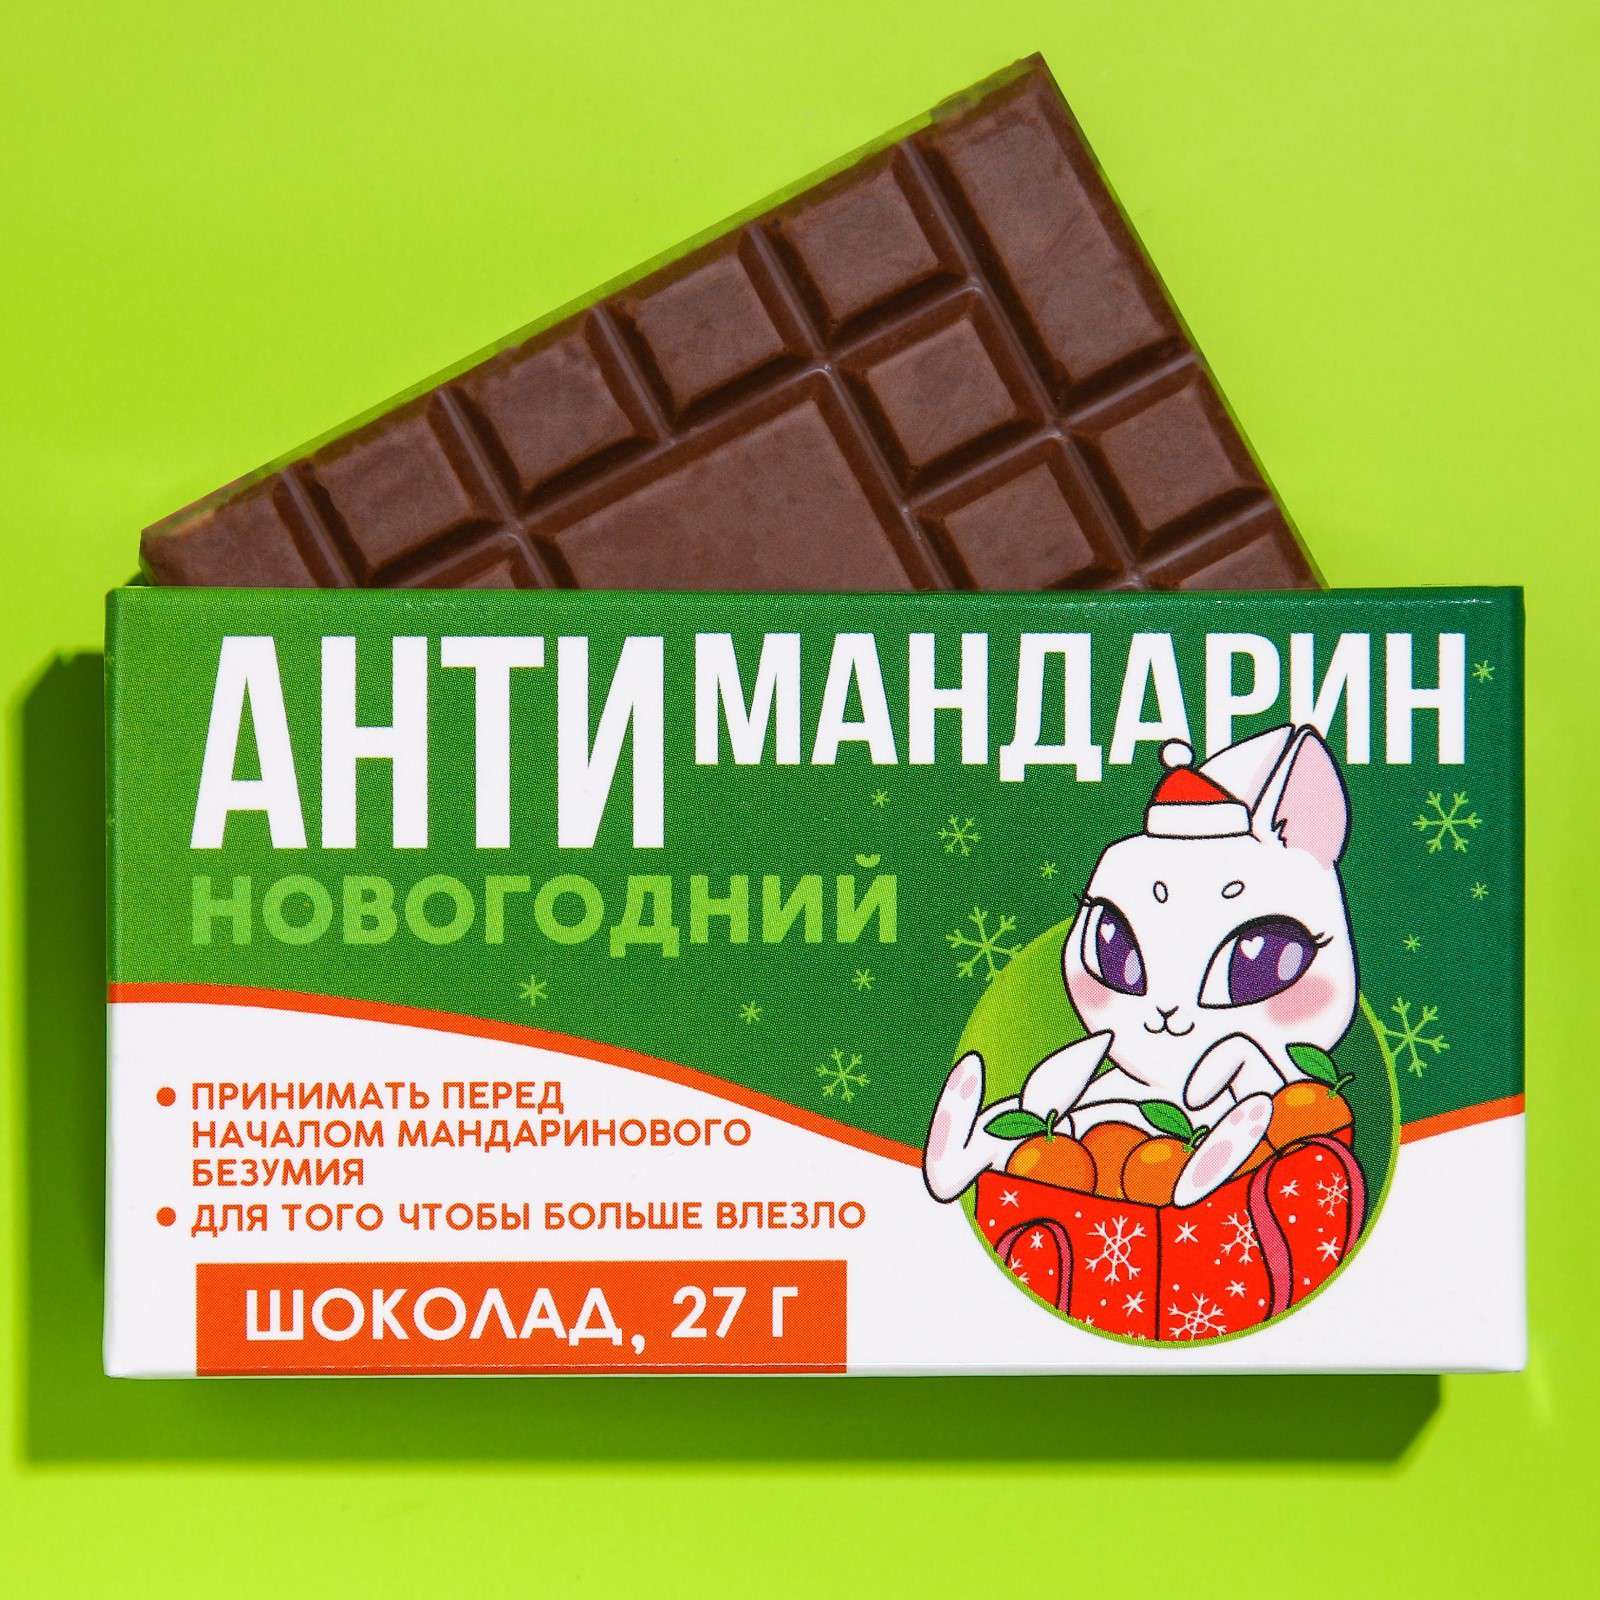 Шоколад 9242812 молочный Антимандарин зайка 27г - Нижнекамск 